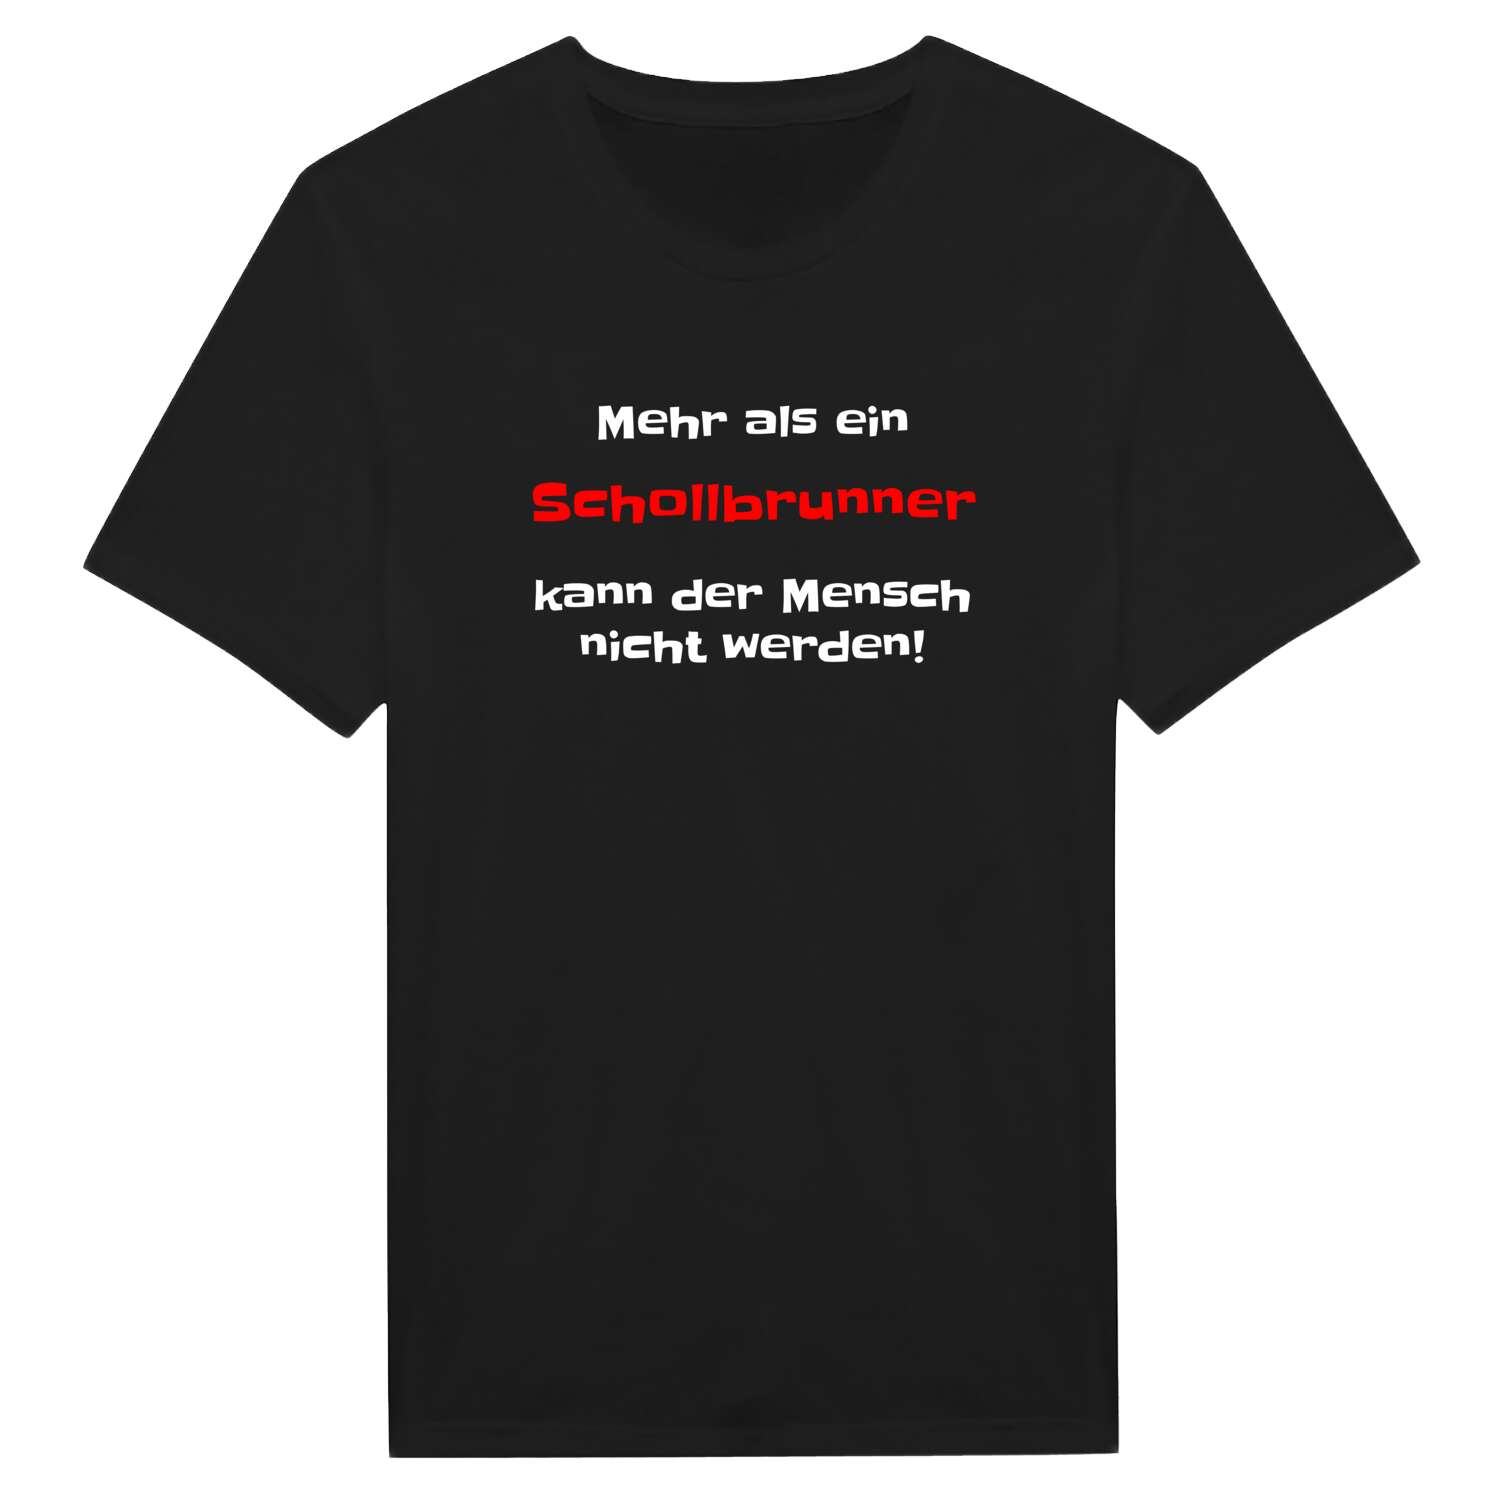 Schollbrunn T-Shirt »Mehr als ein«